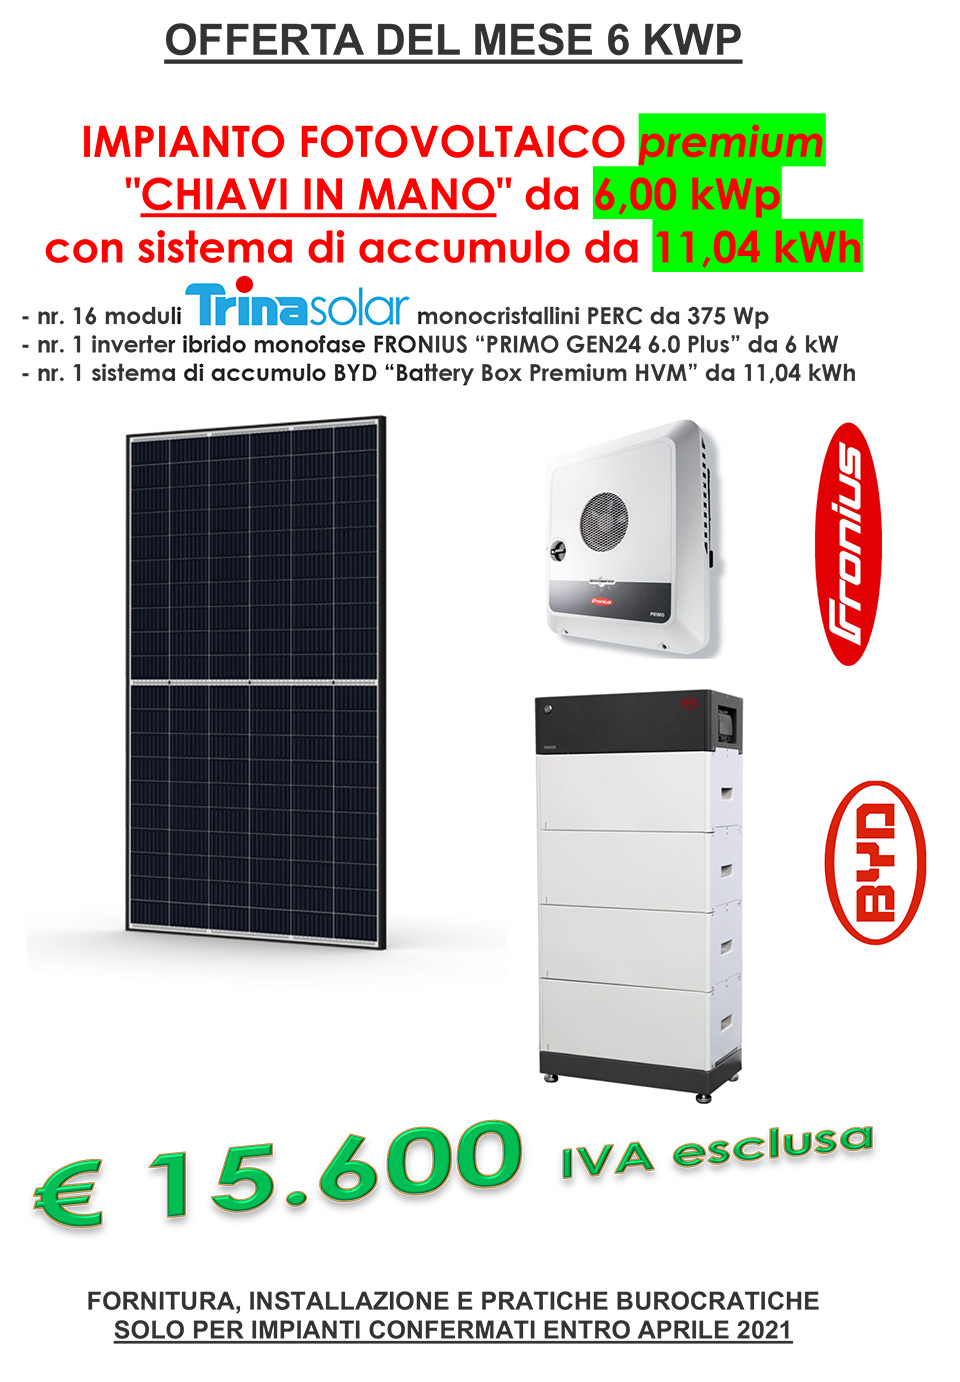 Offerta del mese - Fotovoltaico